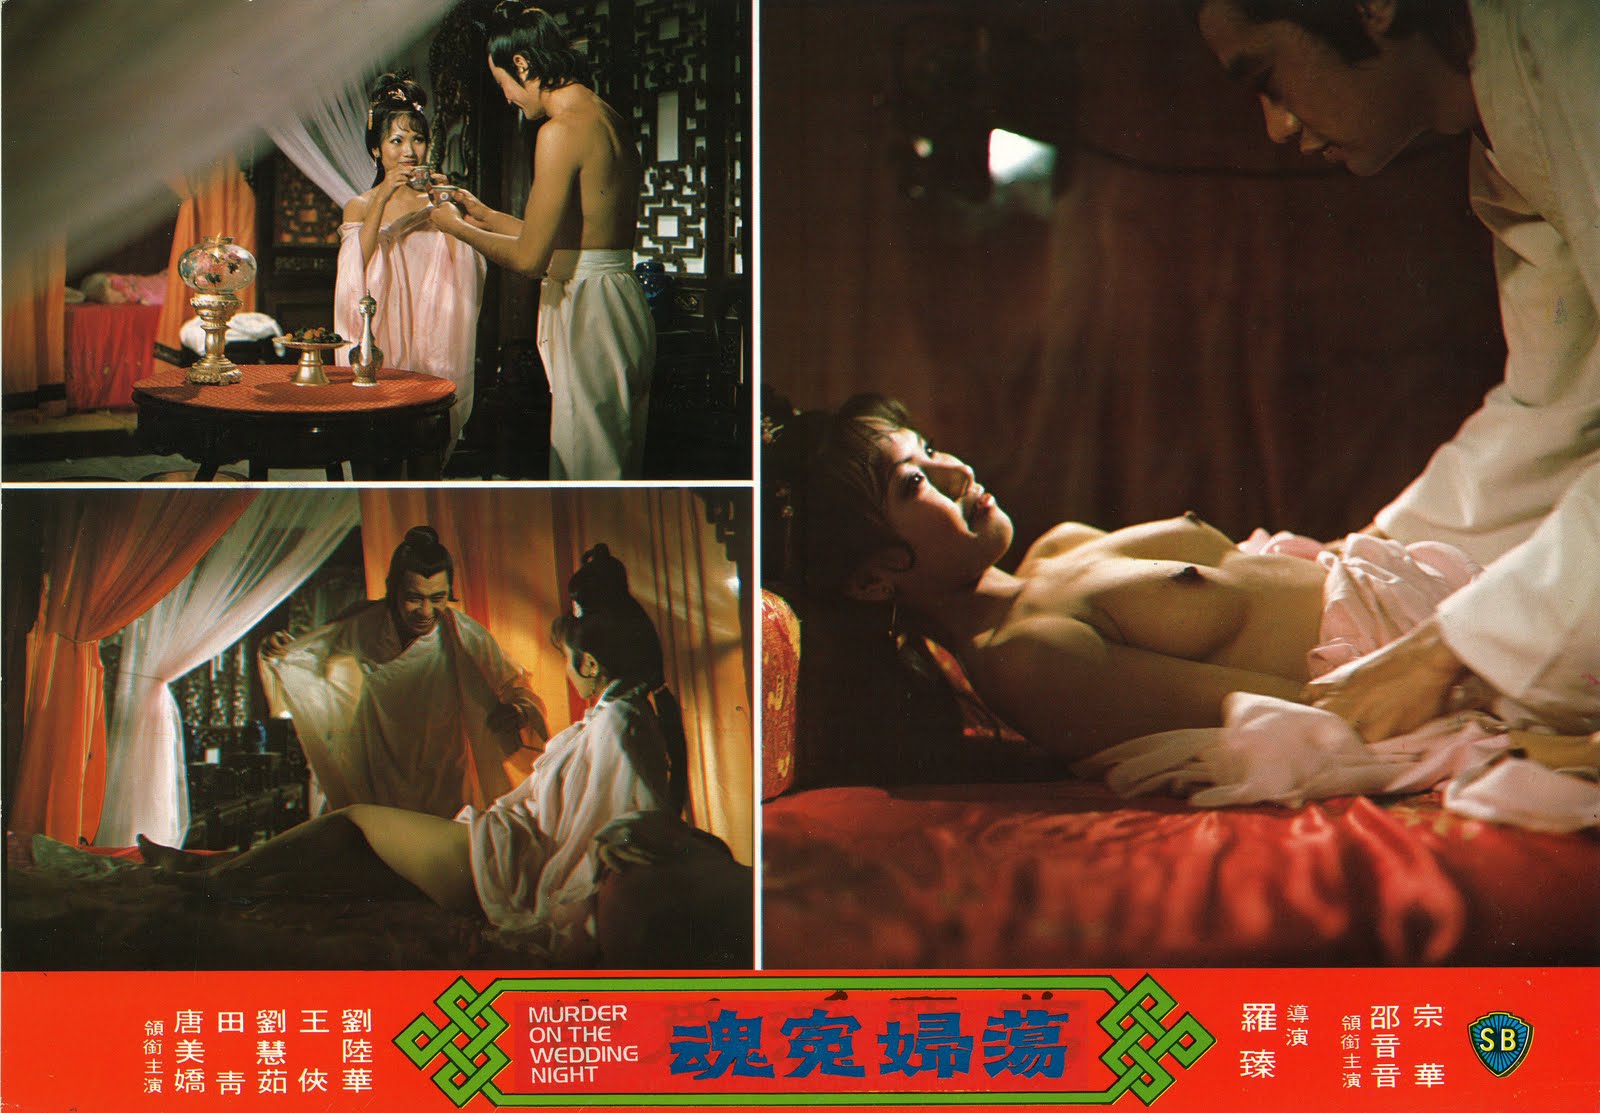 Hong kong movies period sex.